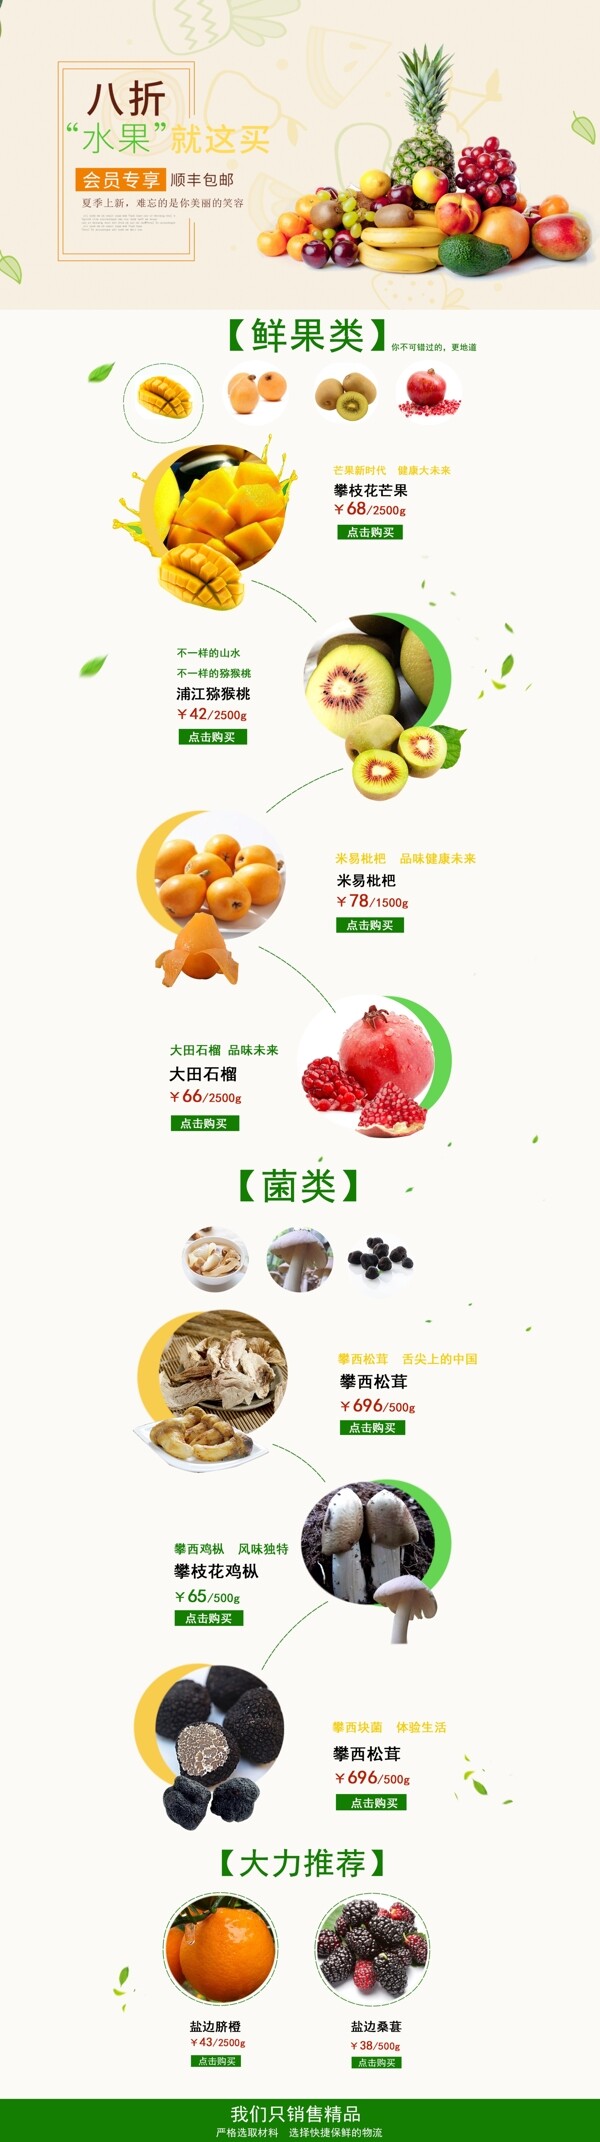 千库原创淘宝天猫水果食品零食首页设计模版